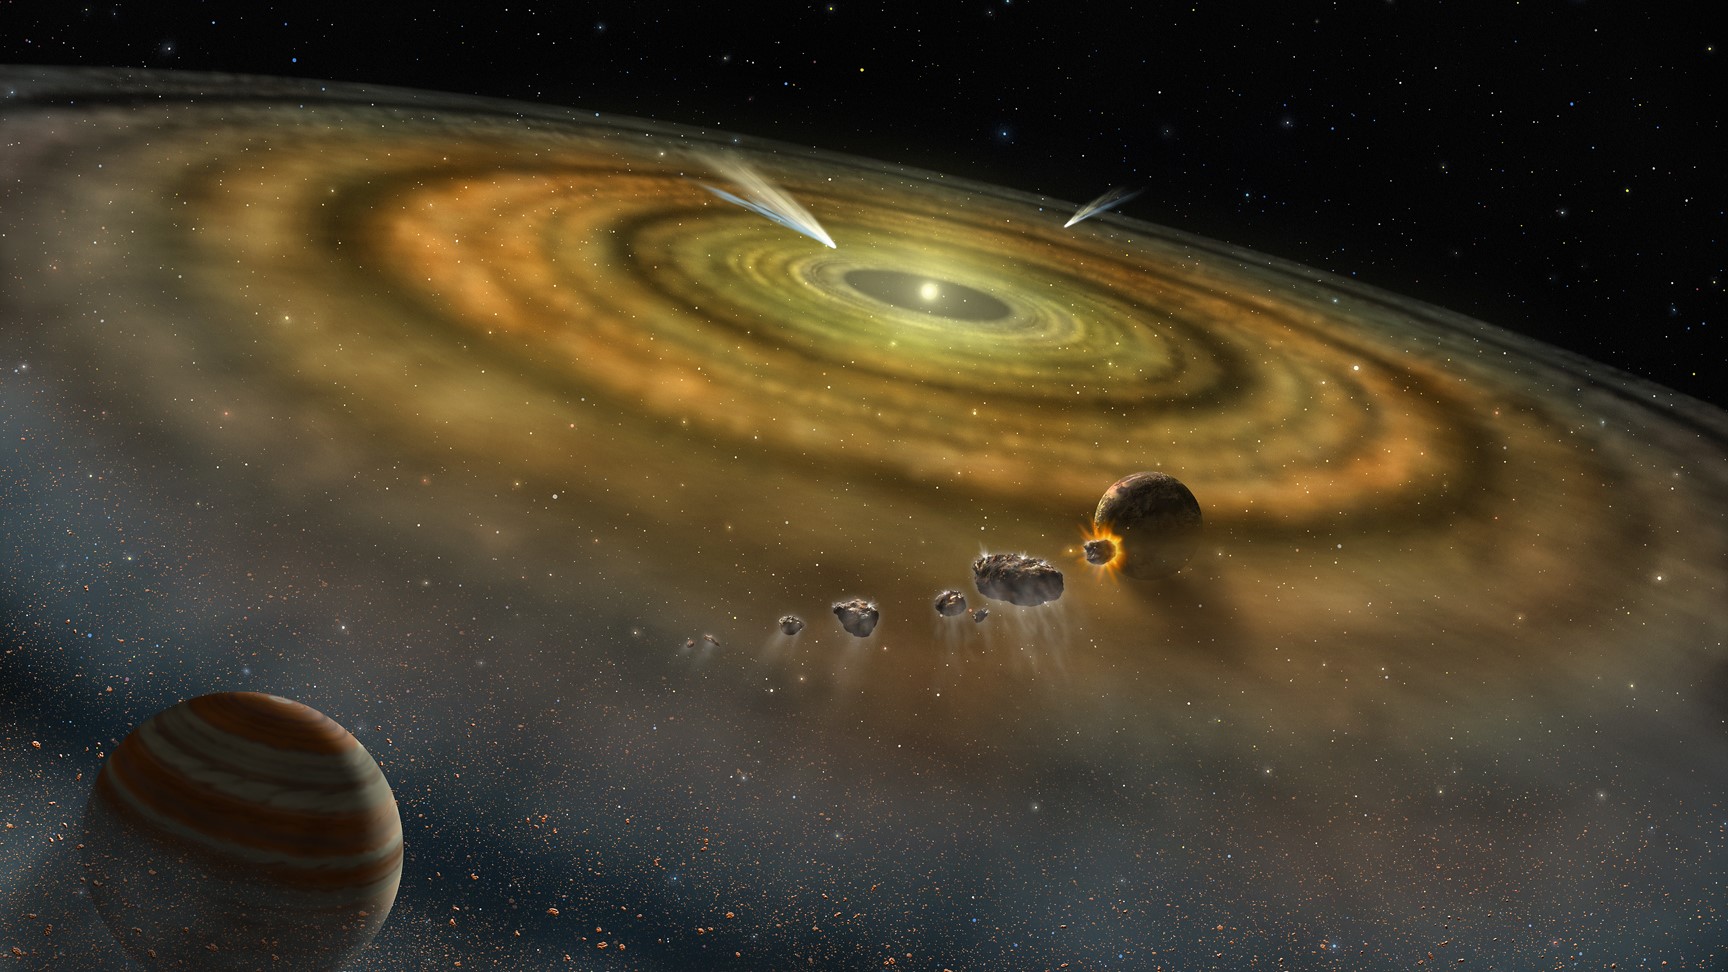 Artystyczne przedstawienie planet powstałych z dysku materiału otaczającego gwiazdę.